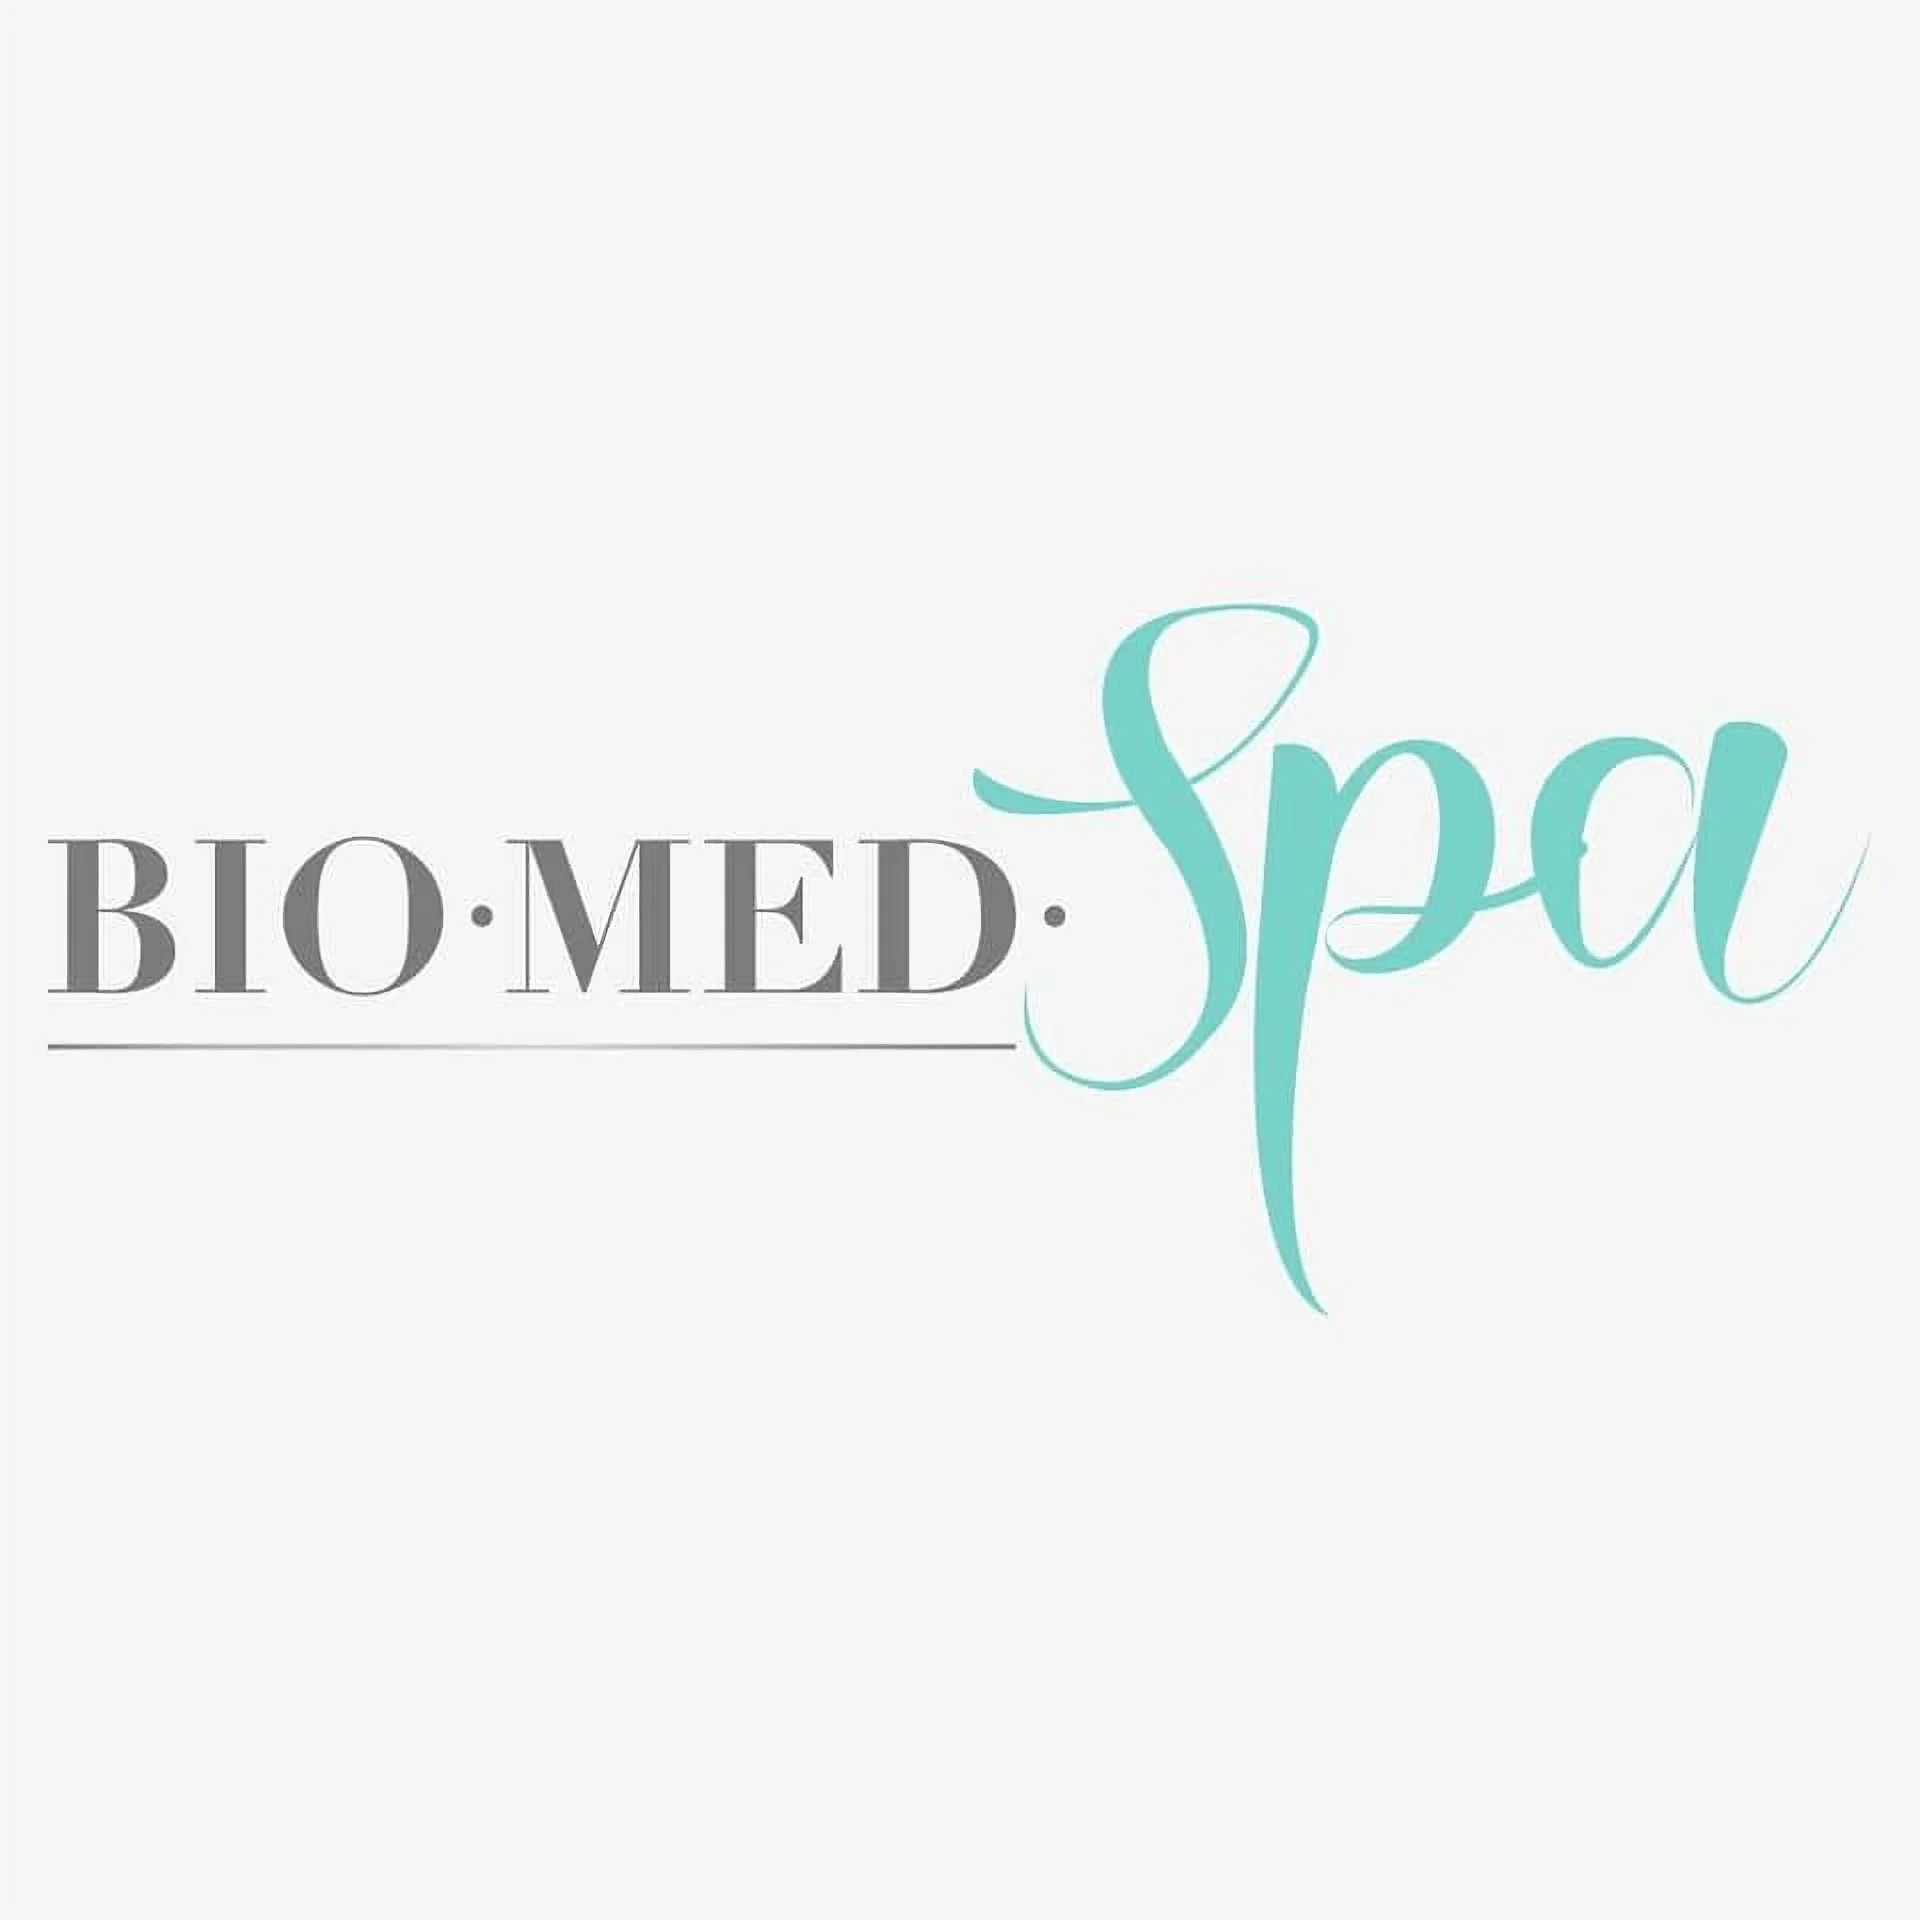 Spa-biomed-spa-11803